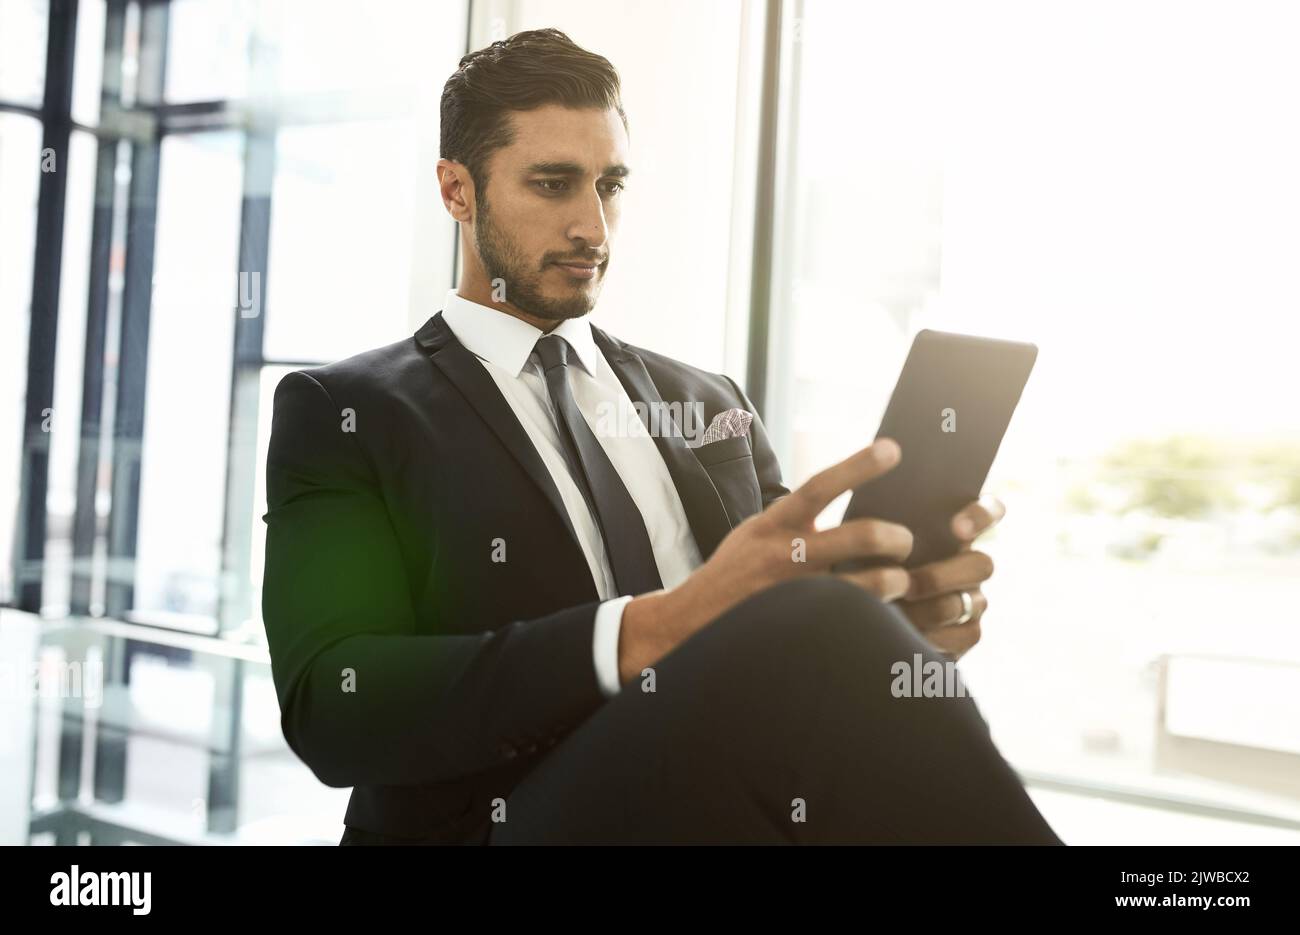 HES est capable de communiquer sans être lié à son bureau. Un homme d'affaires utilisant sa tablette tout en étant assis dans un bureau. Banque D'Images